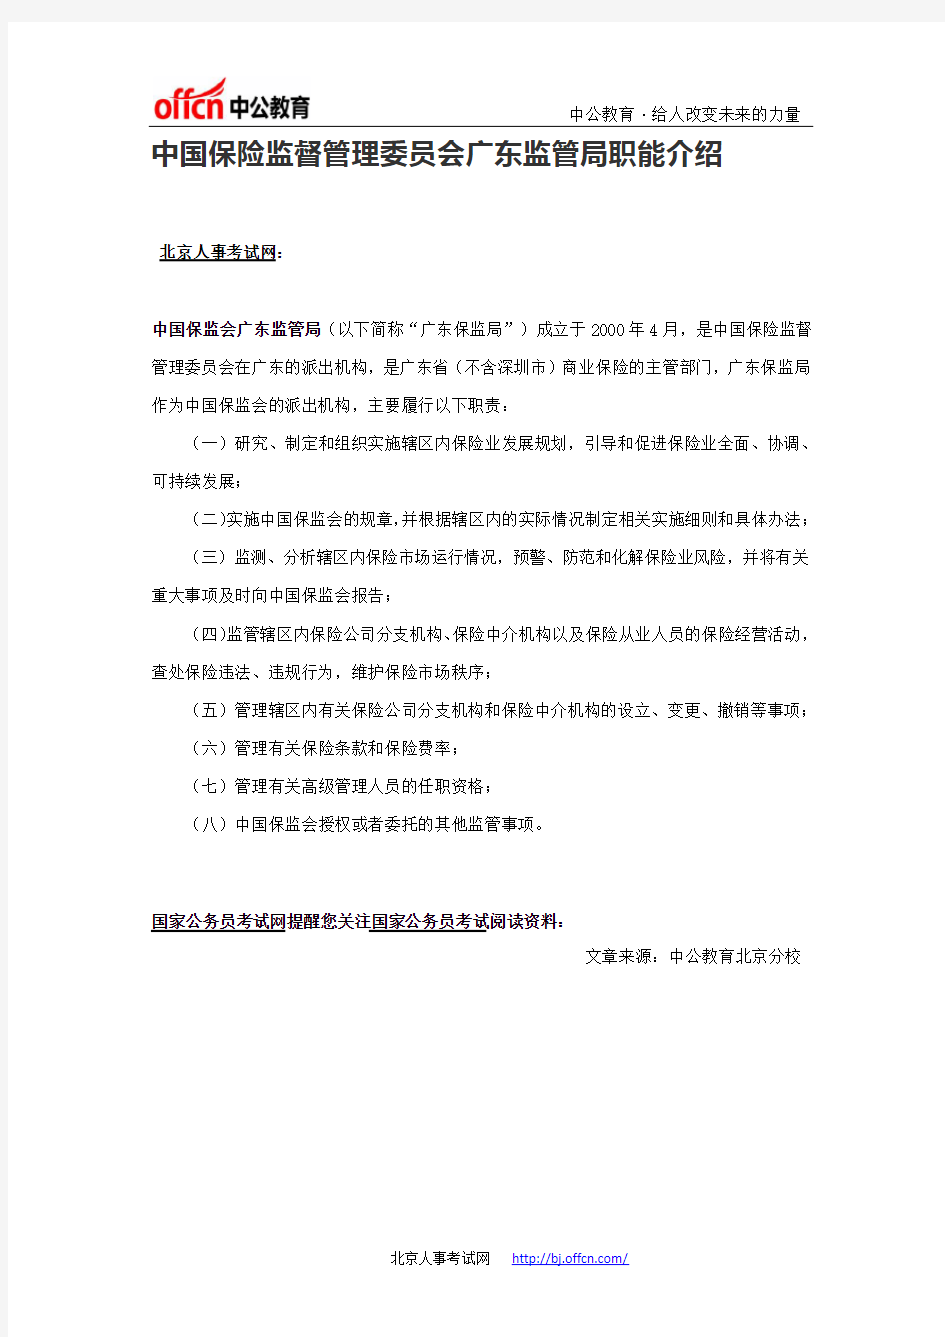 中国保险监督管理委员会广东监管局职能介绍